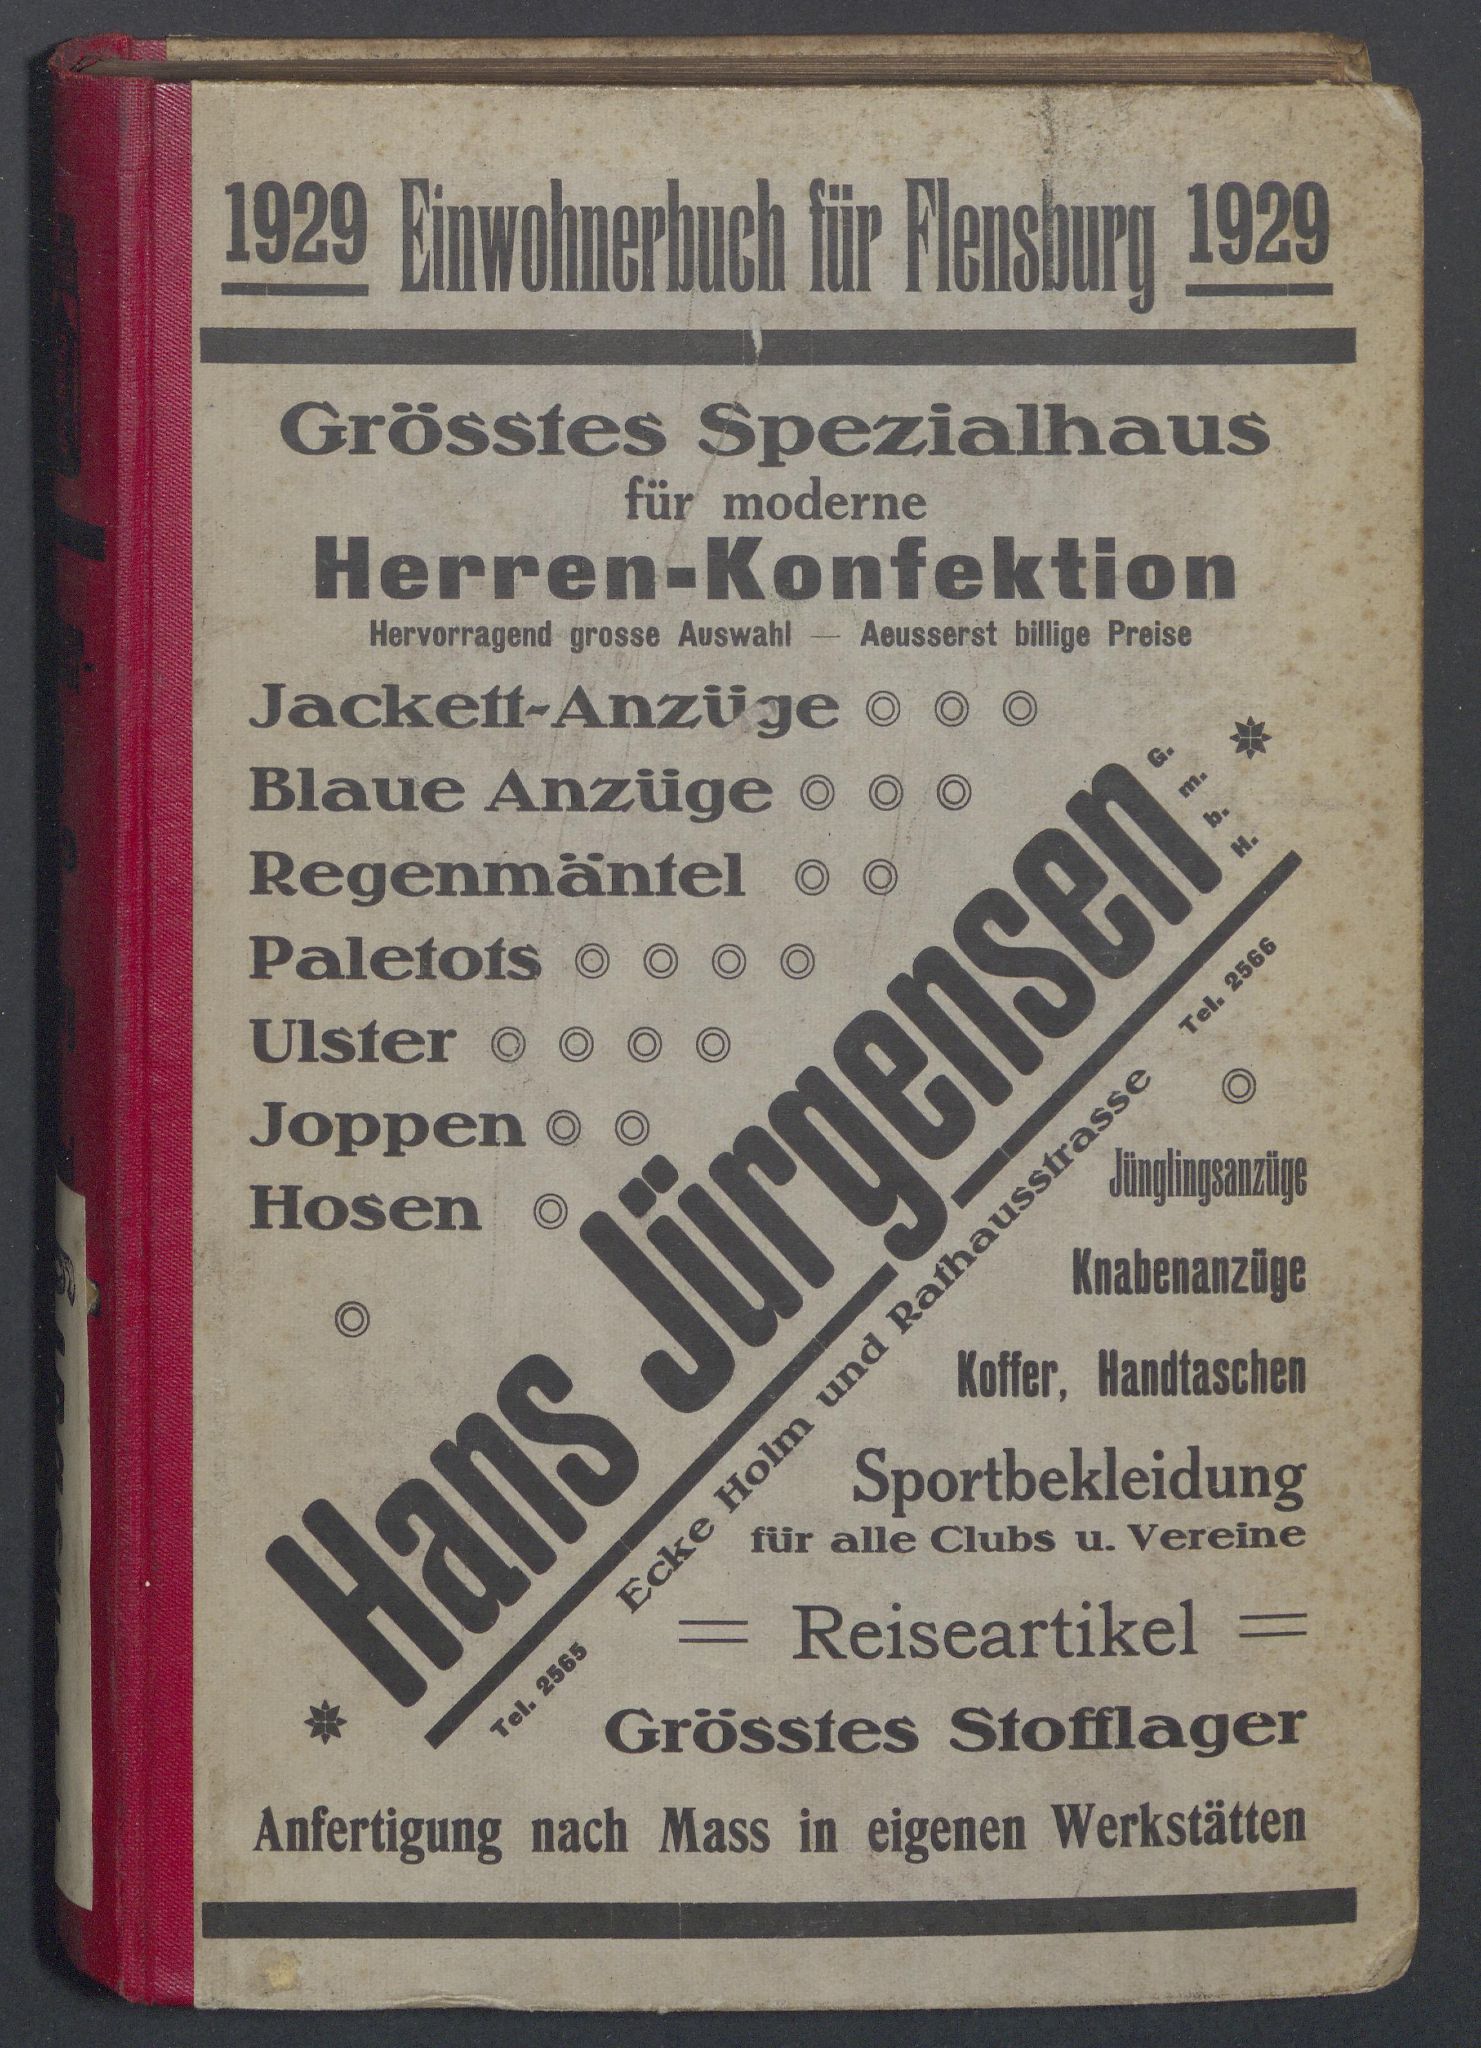 Einwohnerbuch für Flensburg 1929